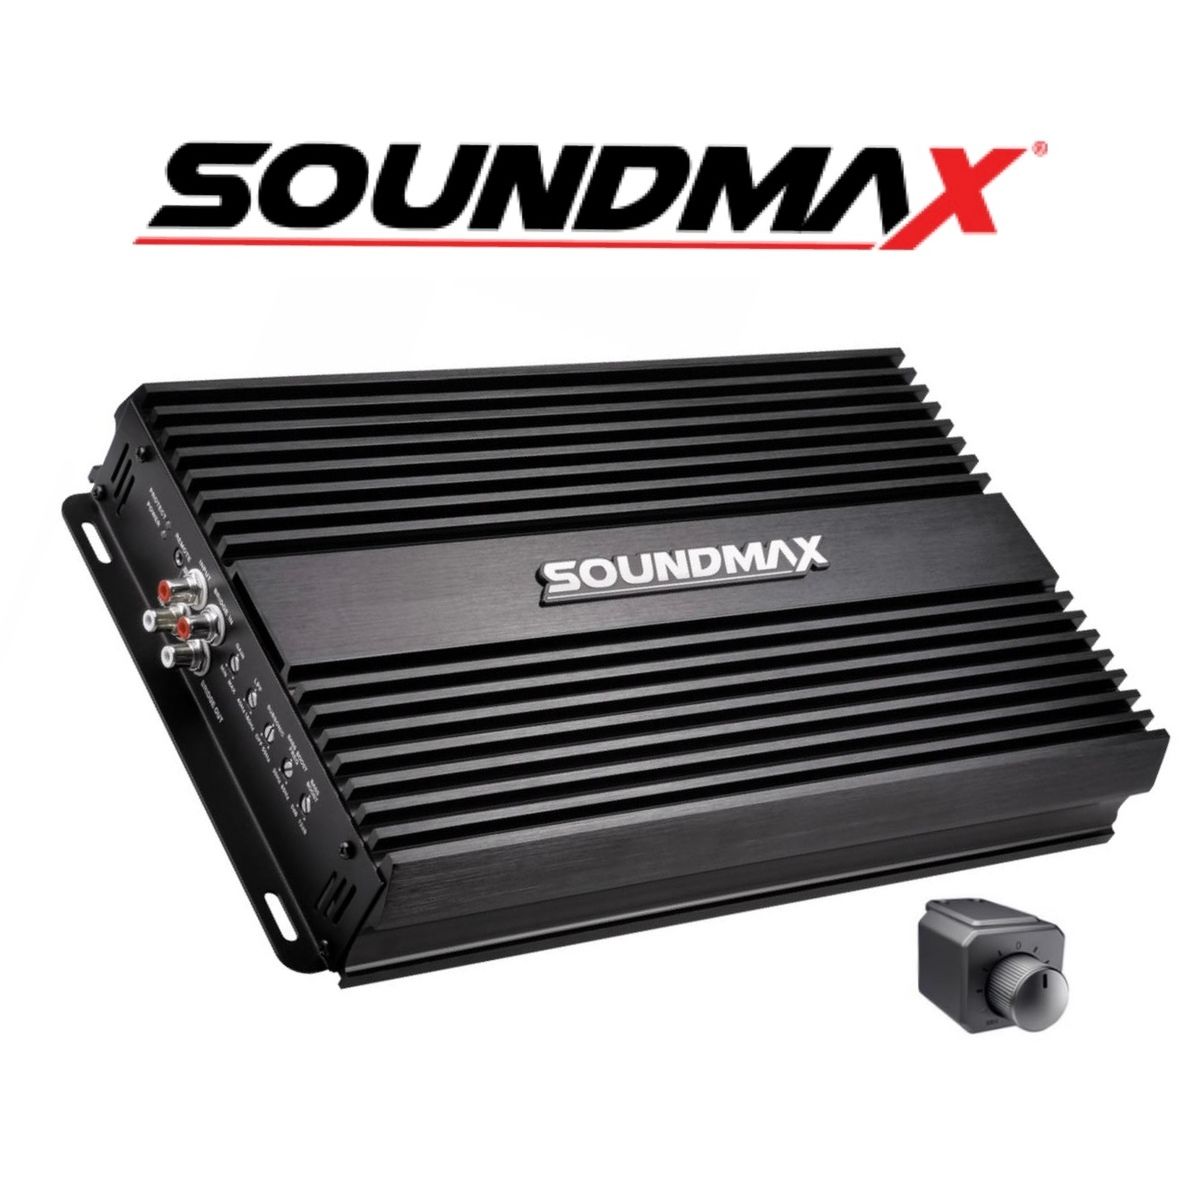 Soundmax Sx-4000.1d Mono Amfi Bas Amfisi 1ohm 4000rms- 2 Ohm 3000rms-4ohm 2000rms-bas Kontrollü